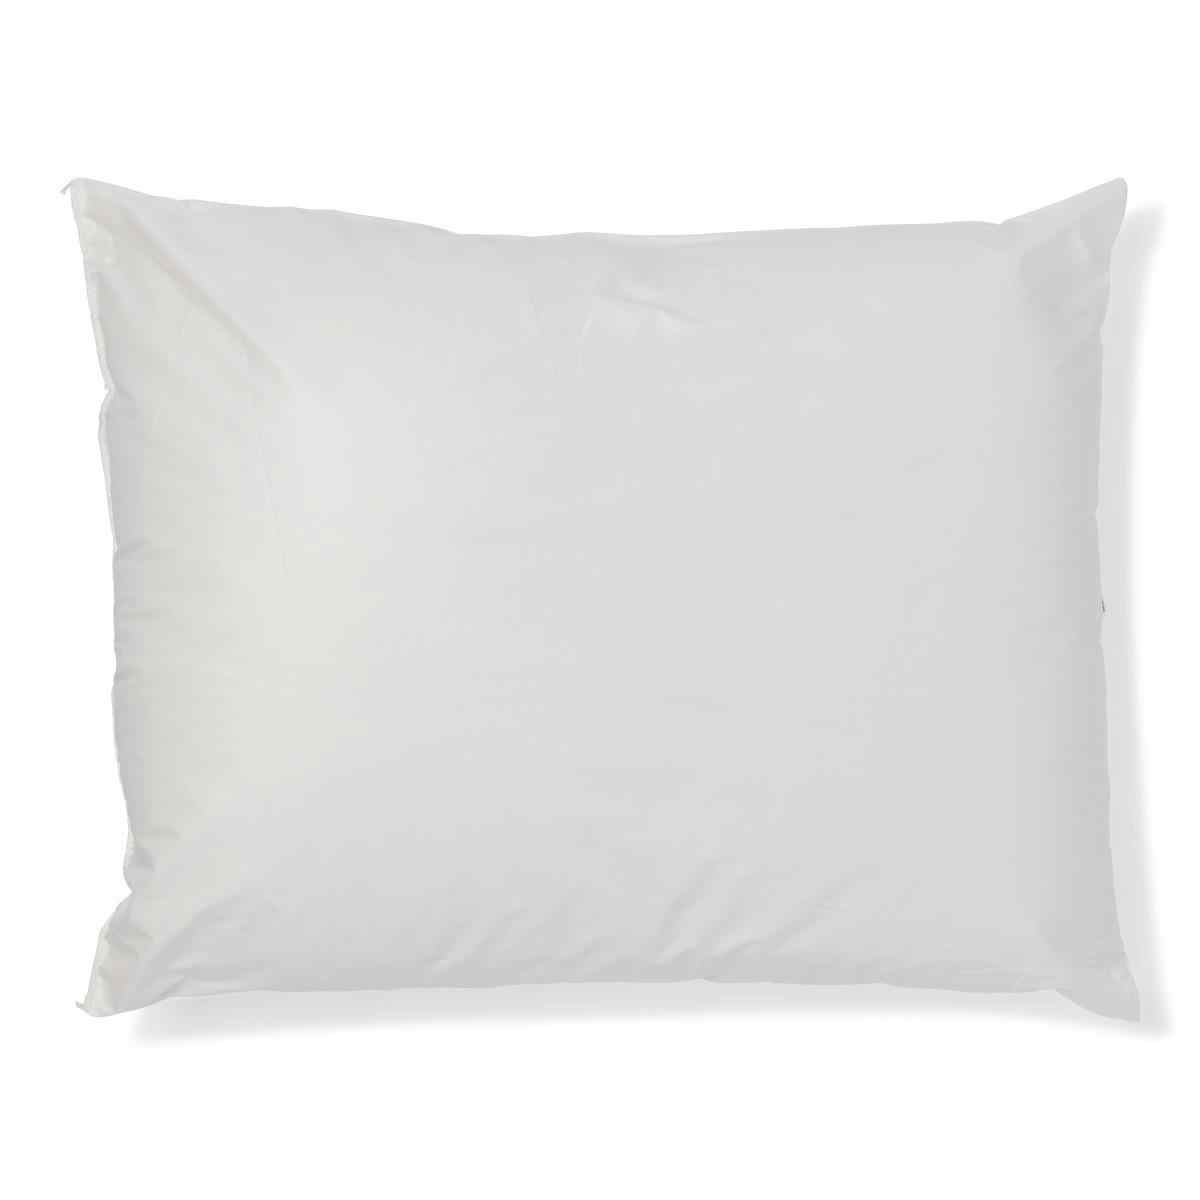 Medline Medsoft Pillow, MDT219683, White - 20" X 26" - 1 Pillow